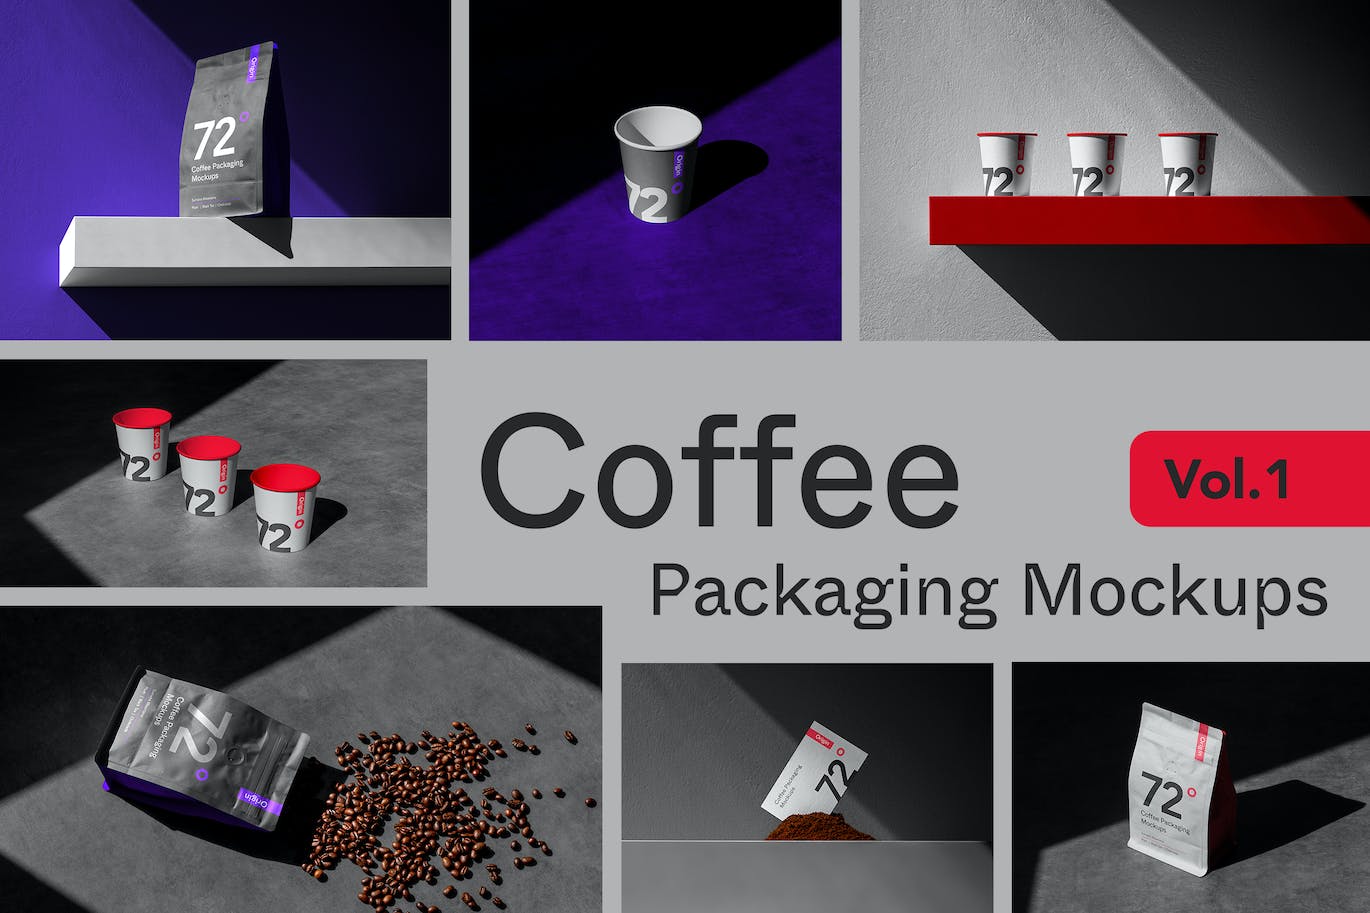 咖啡袋&纸杯品牌包装样机v1 Origin Coffee Packaging Mockups Vol. 1 样机素材 第1张